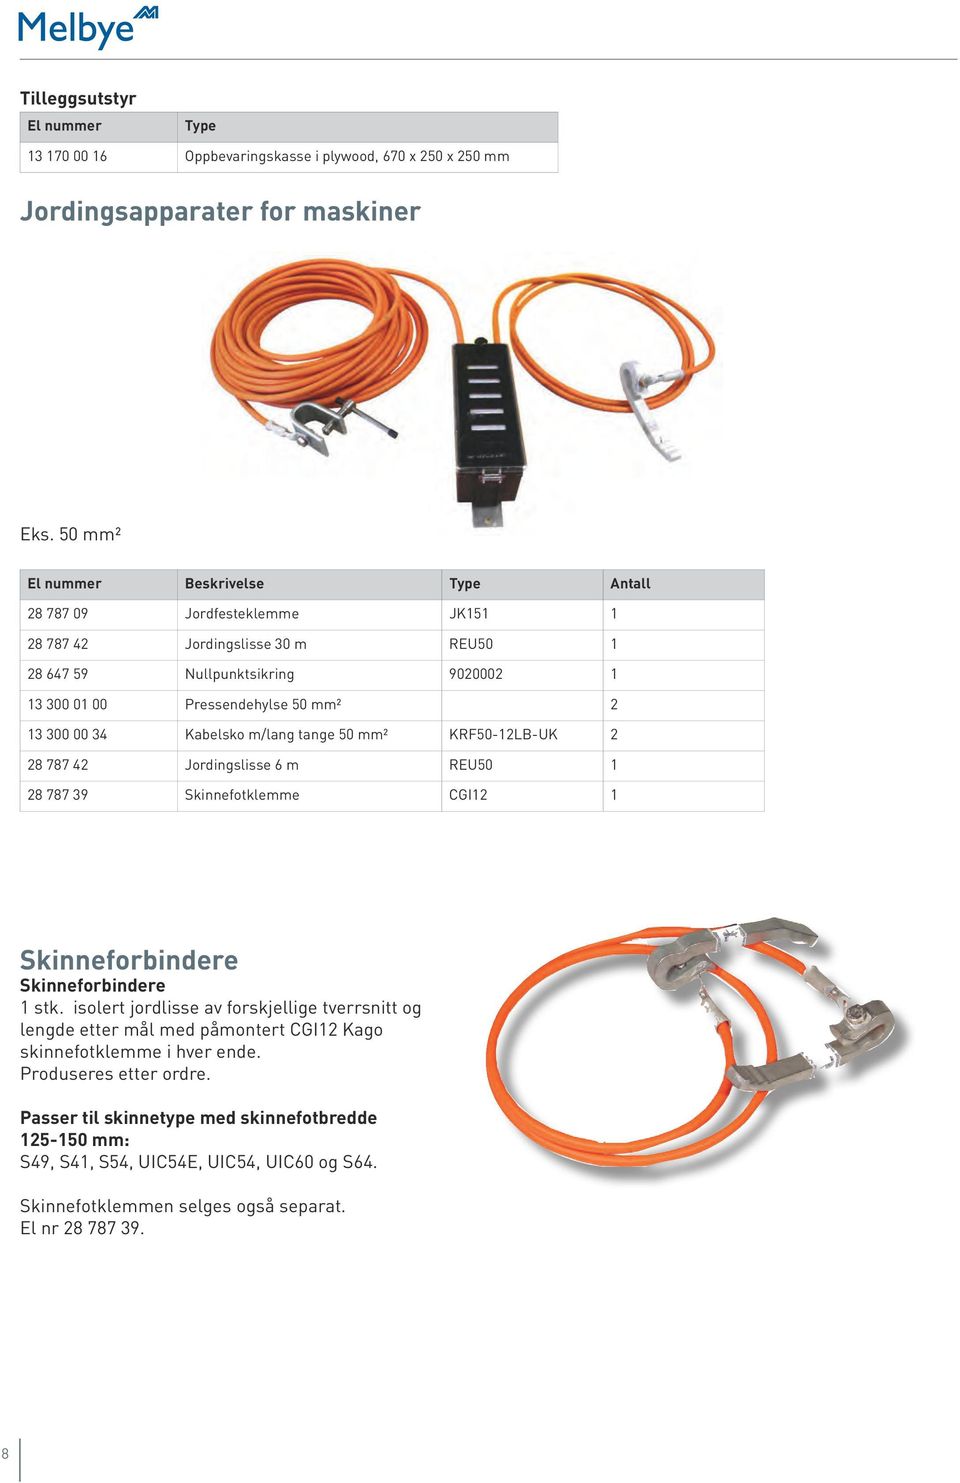 Kabelsko m/lang tange 50 mm2 KRF50-12LB-UK 2 28 787 42 Jordingslisse 6 m REU50 1 28 787 39 Skinnefotklemme CGI12 1 Skinneforbindere Skinneforbindere 1 stk.